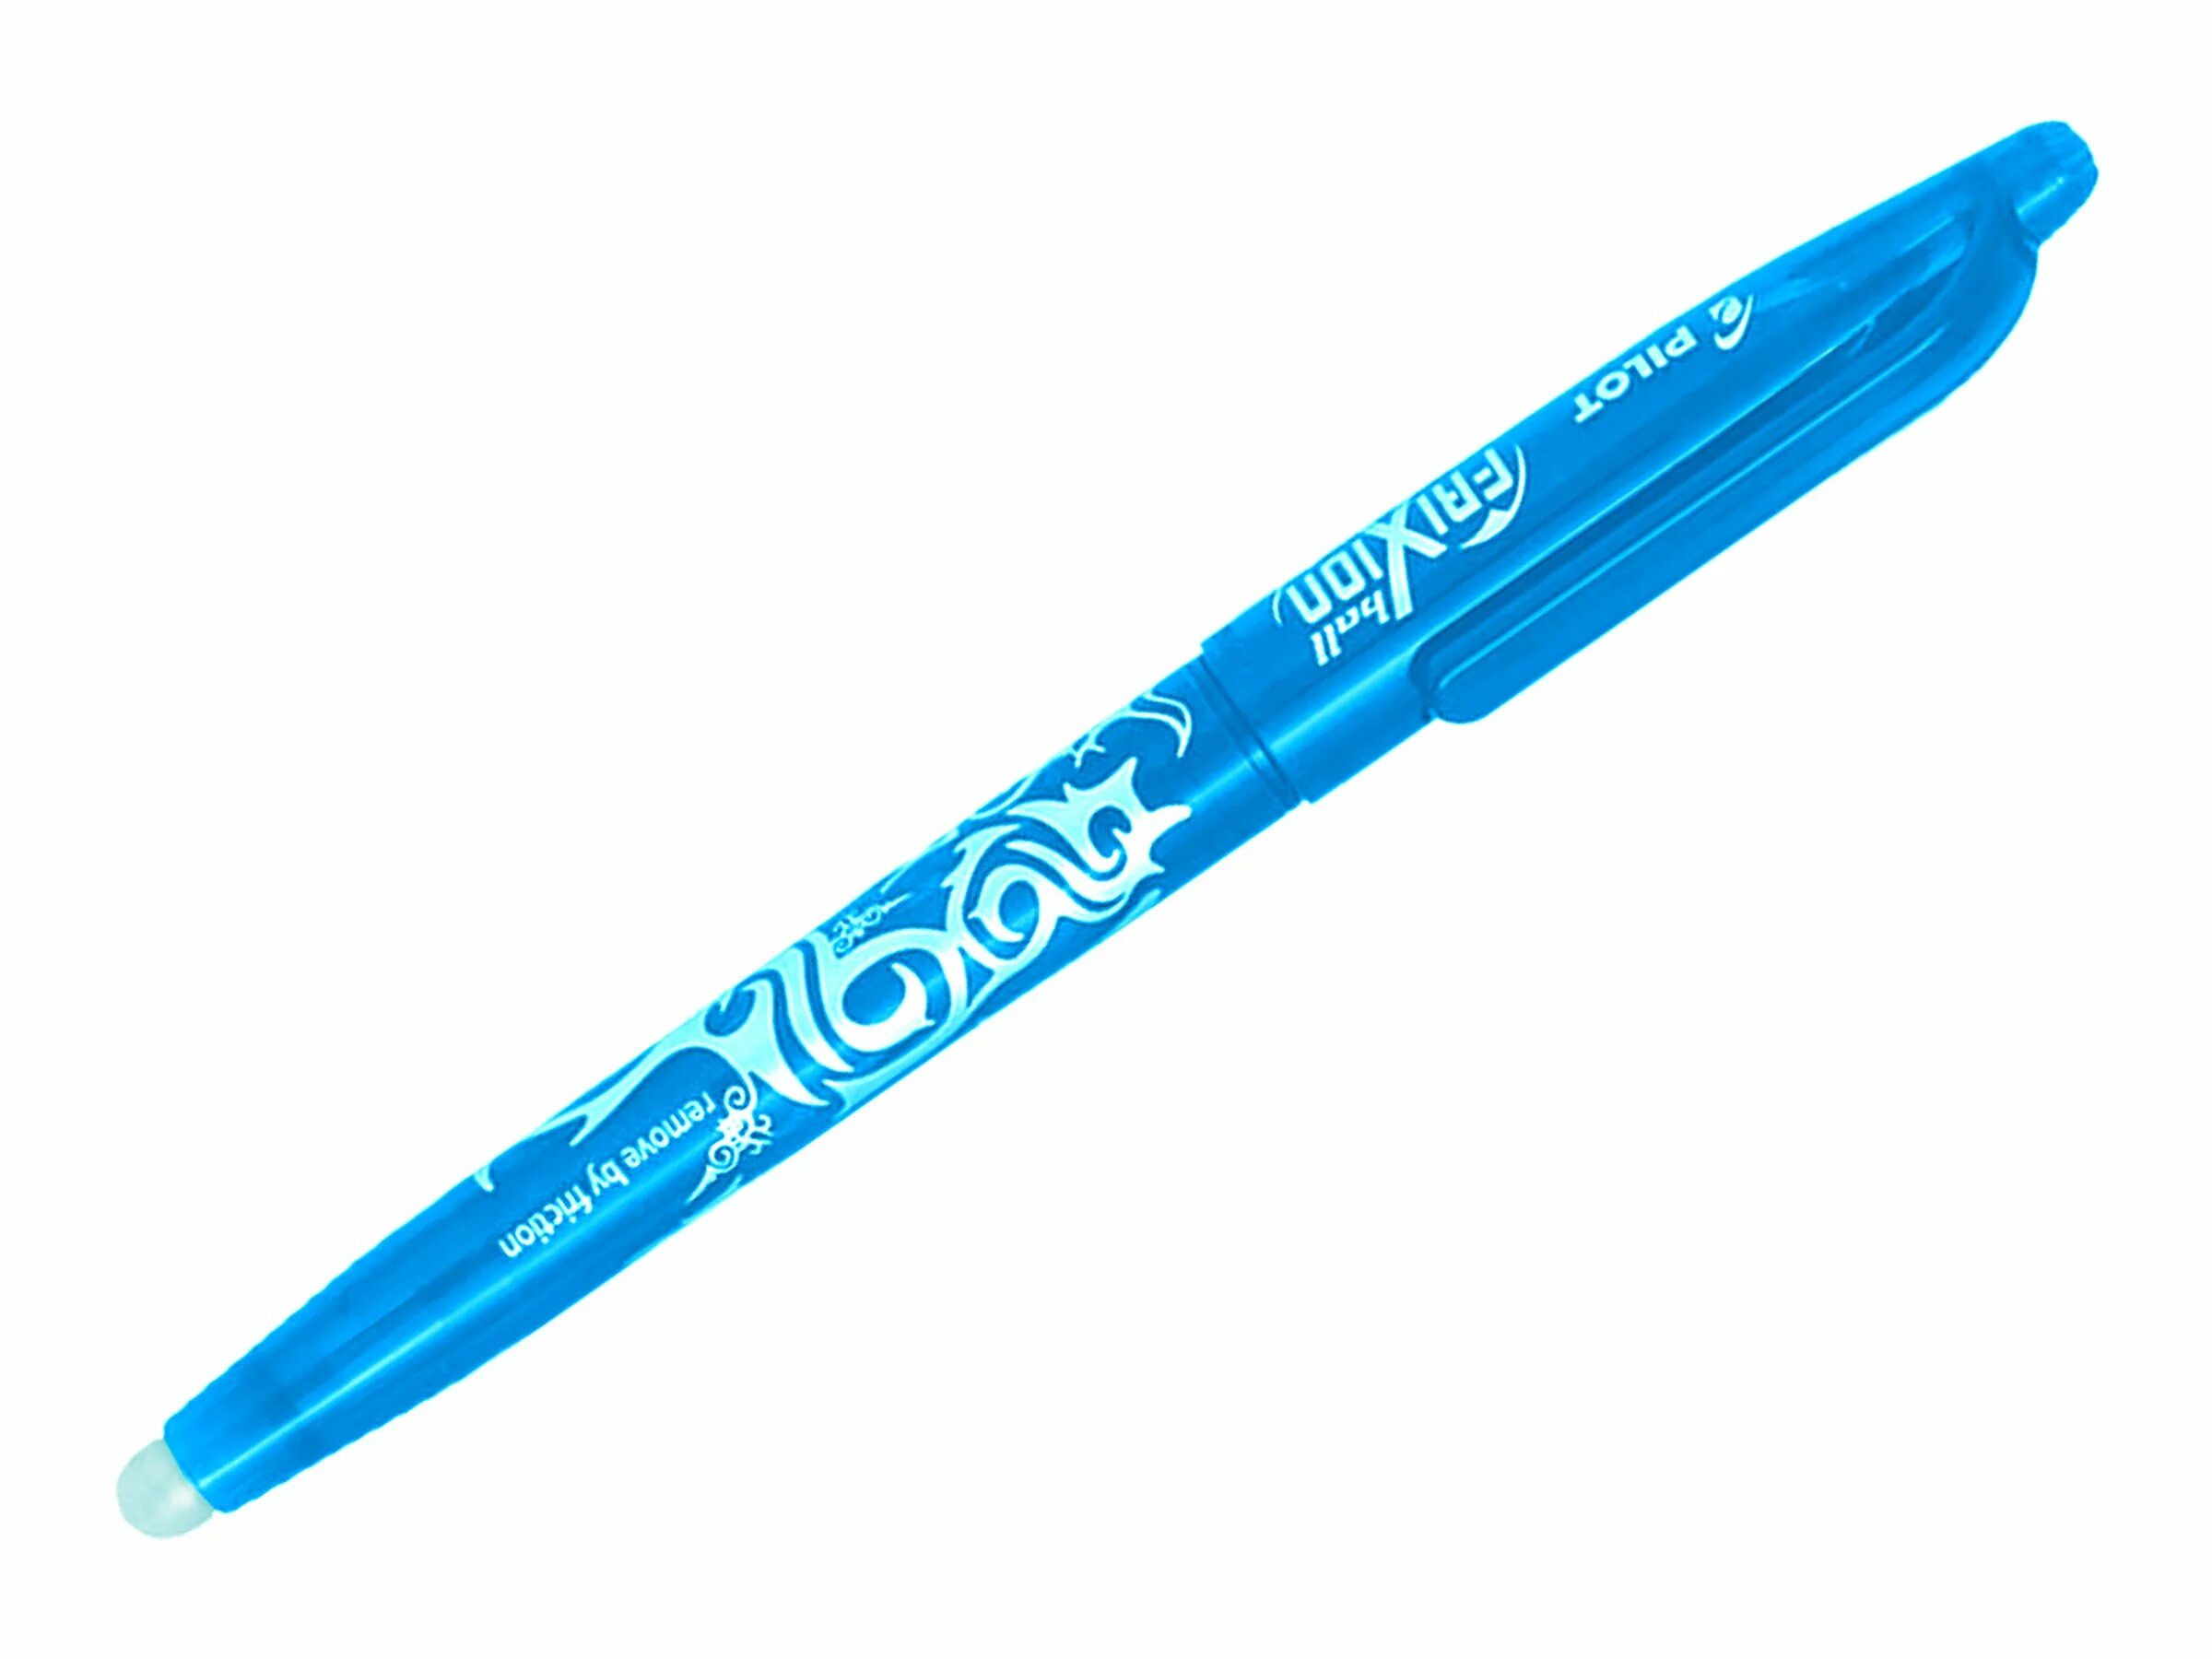 Сине зеленые ручка. Ручка стёрка пилот 0.7. Ручка стирашка пилот 0,7. Pilot Frixion ластик. Ручка стирашка шариковая пилот 0.7.